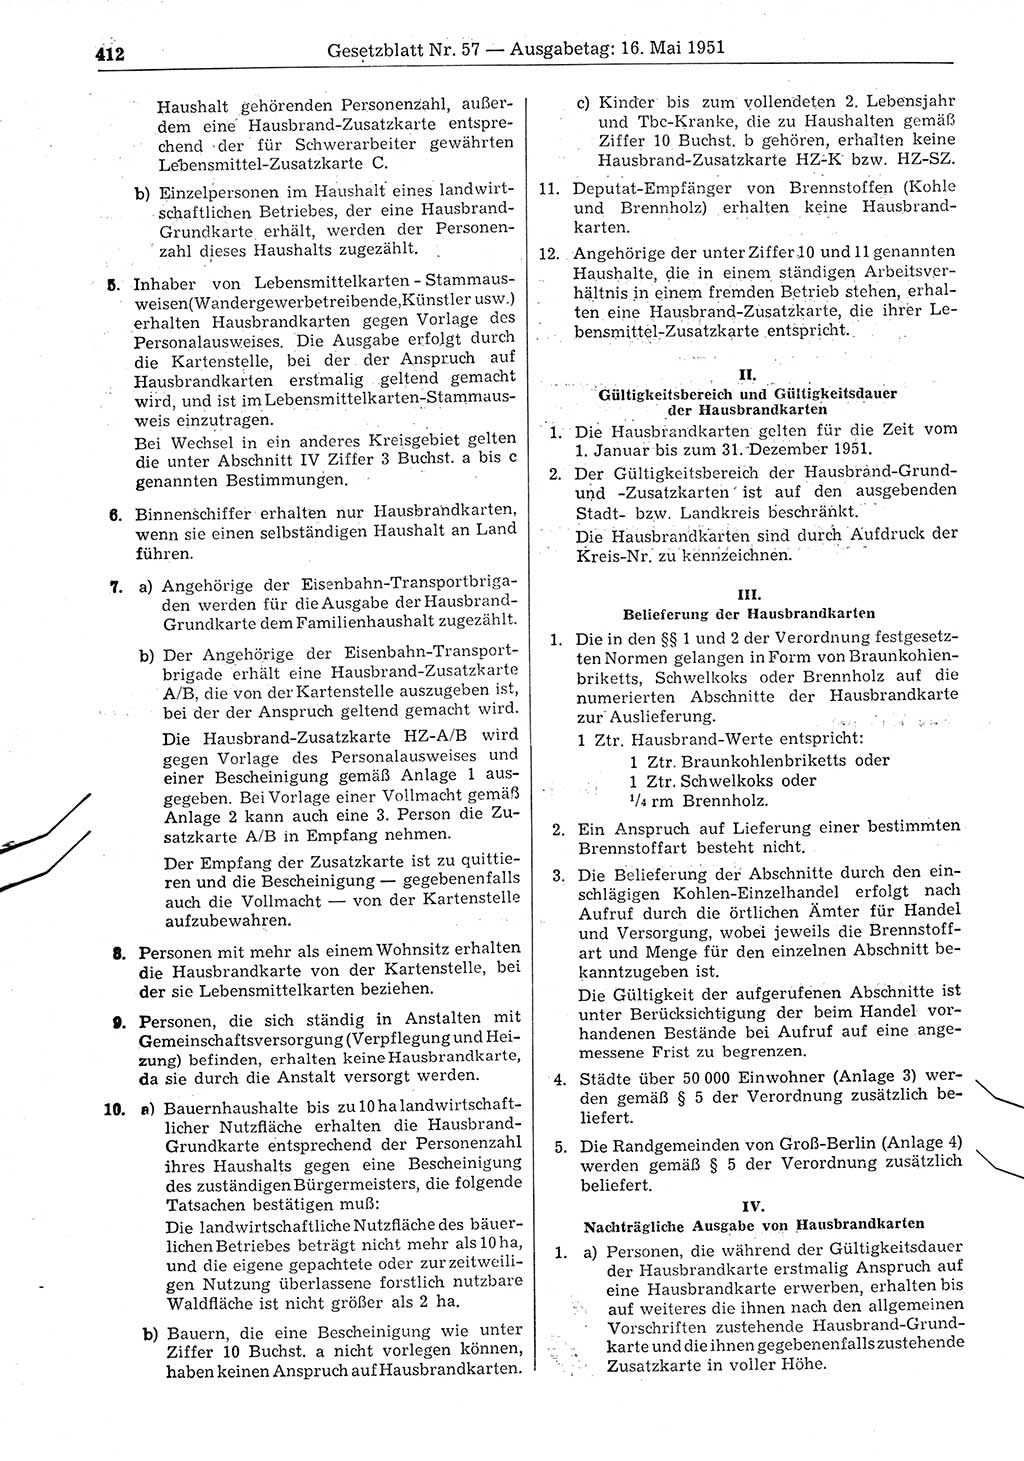 Gesetzblatt (GBl.) der Deutschen Demokratischen Republik (DDR) 1951, Seite 412 (GBl. DDR 1951, S. 412)